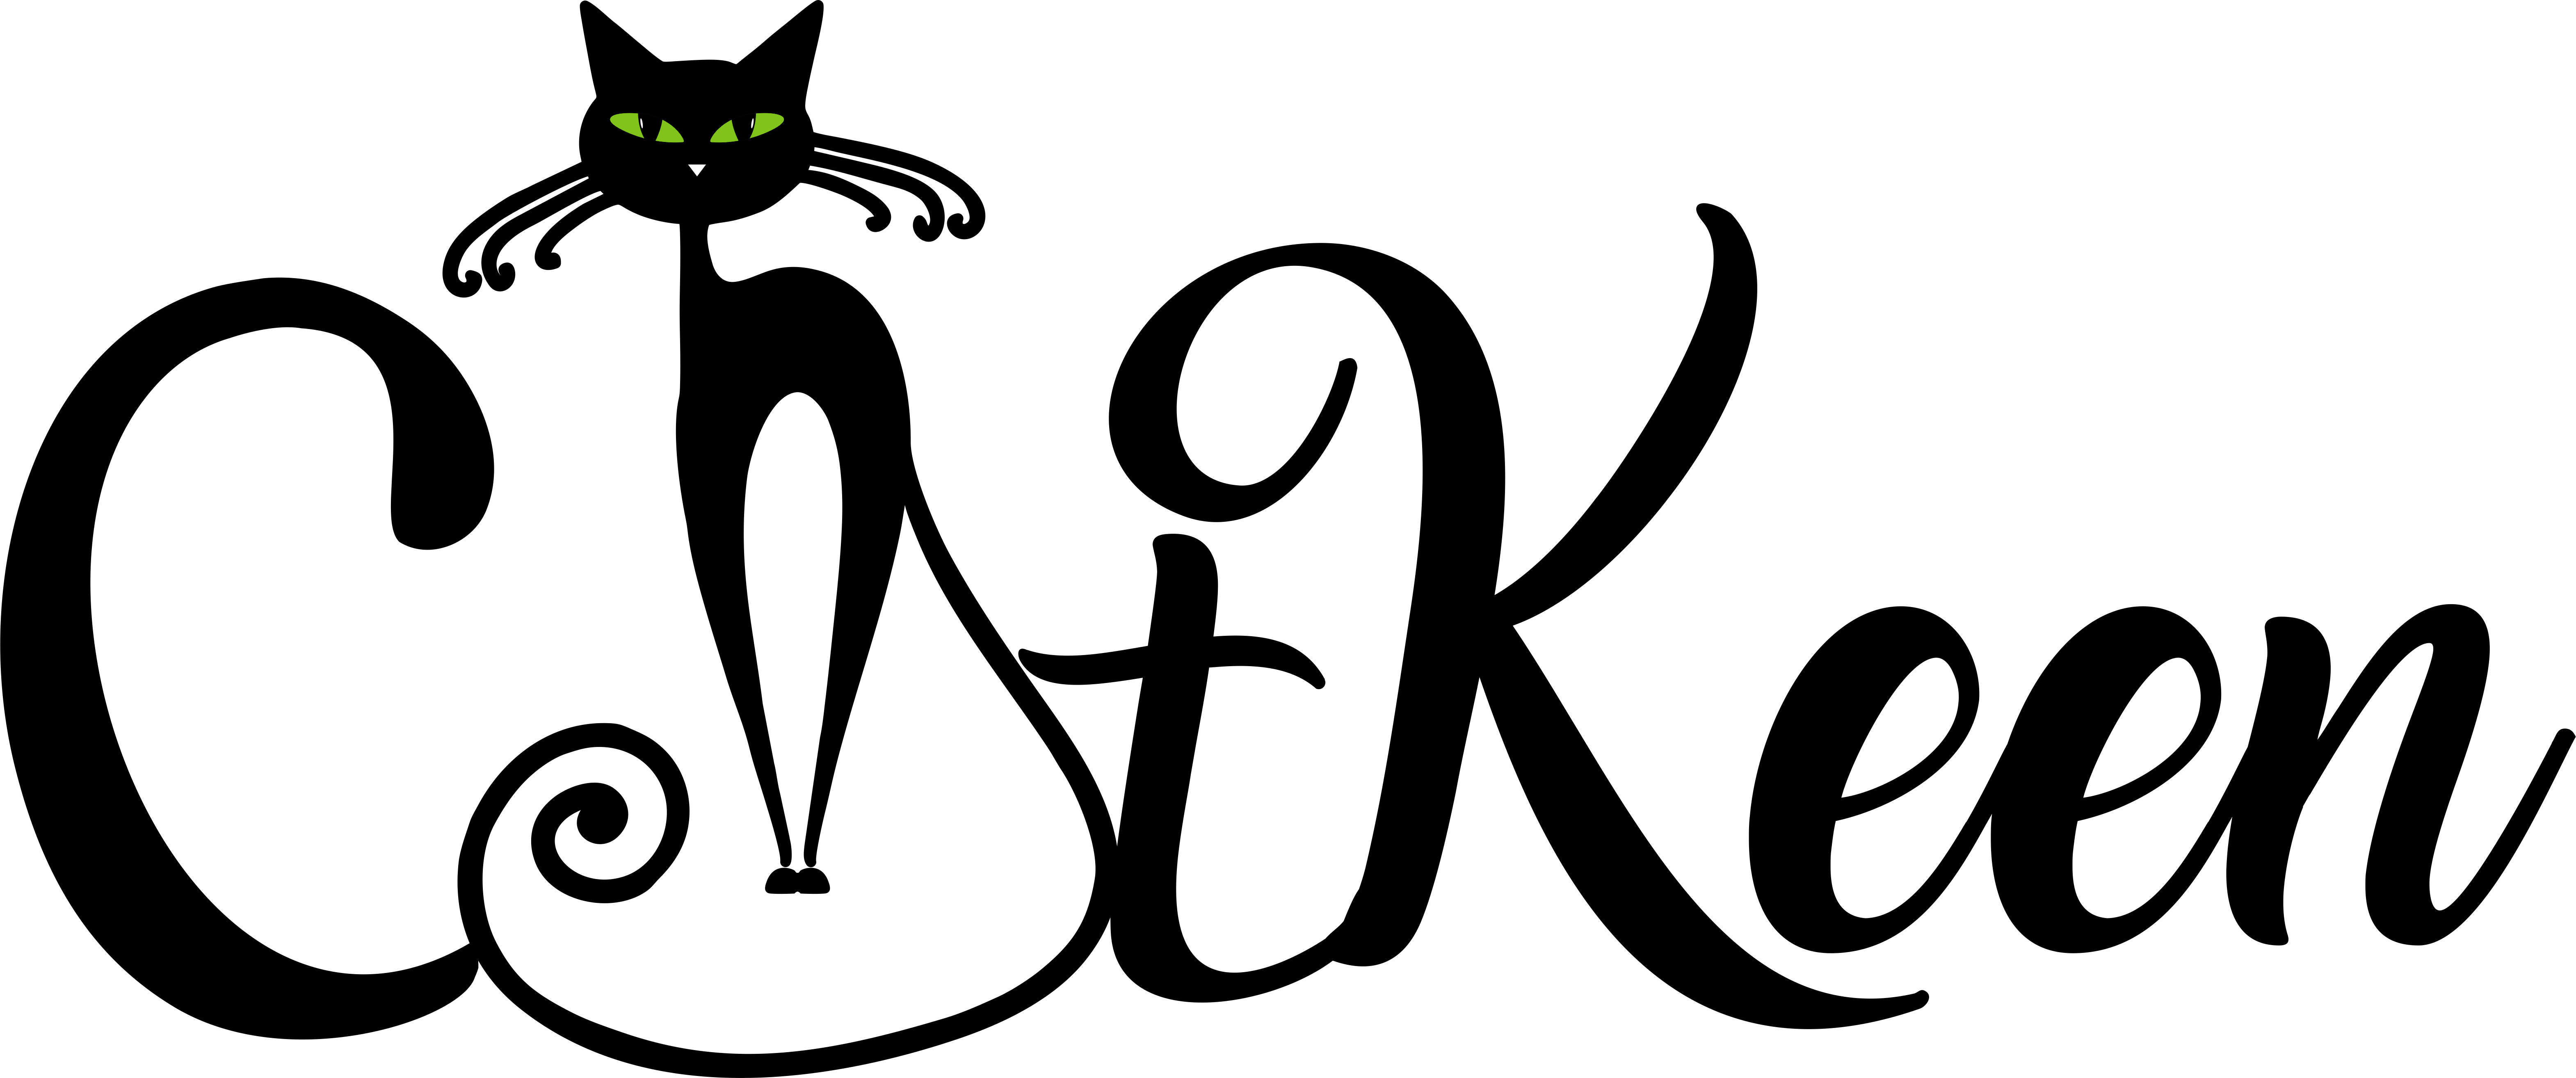 Asociatia Catkeen logo